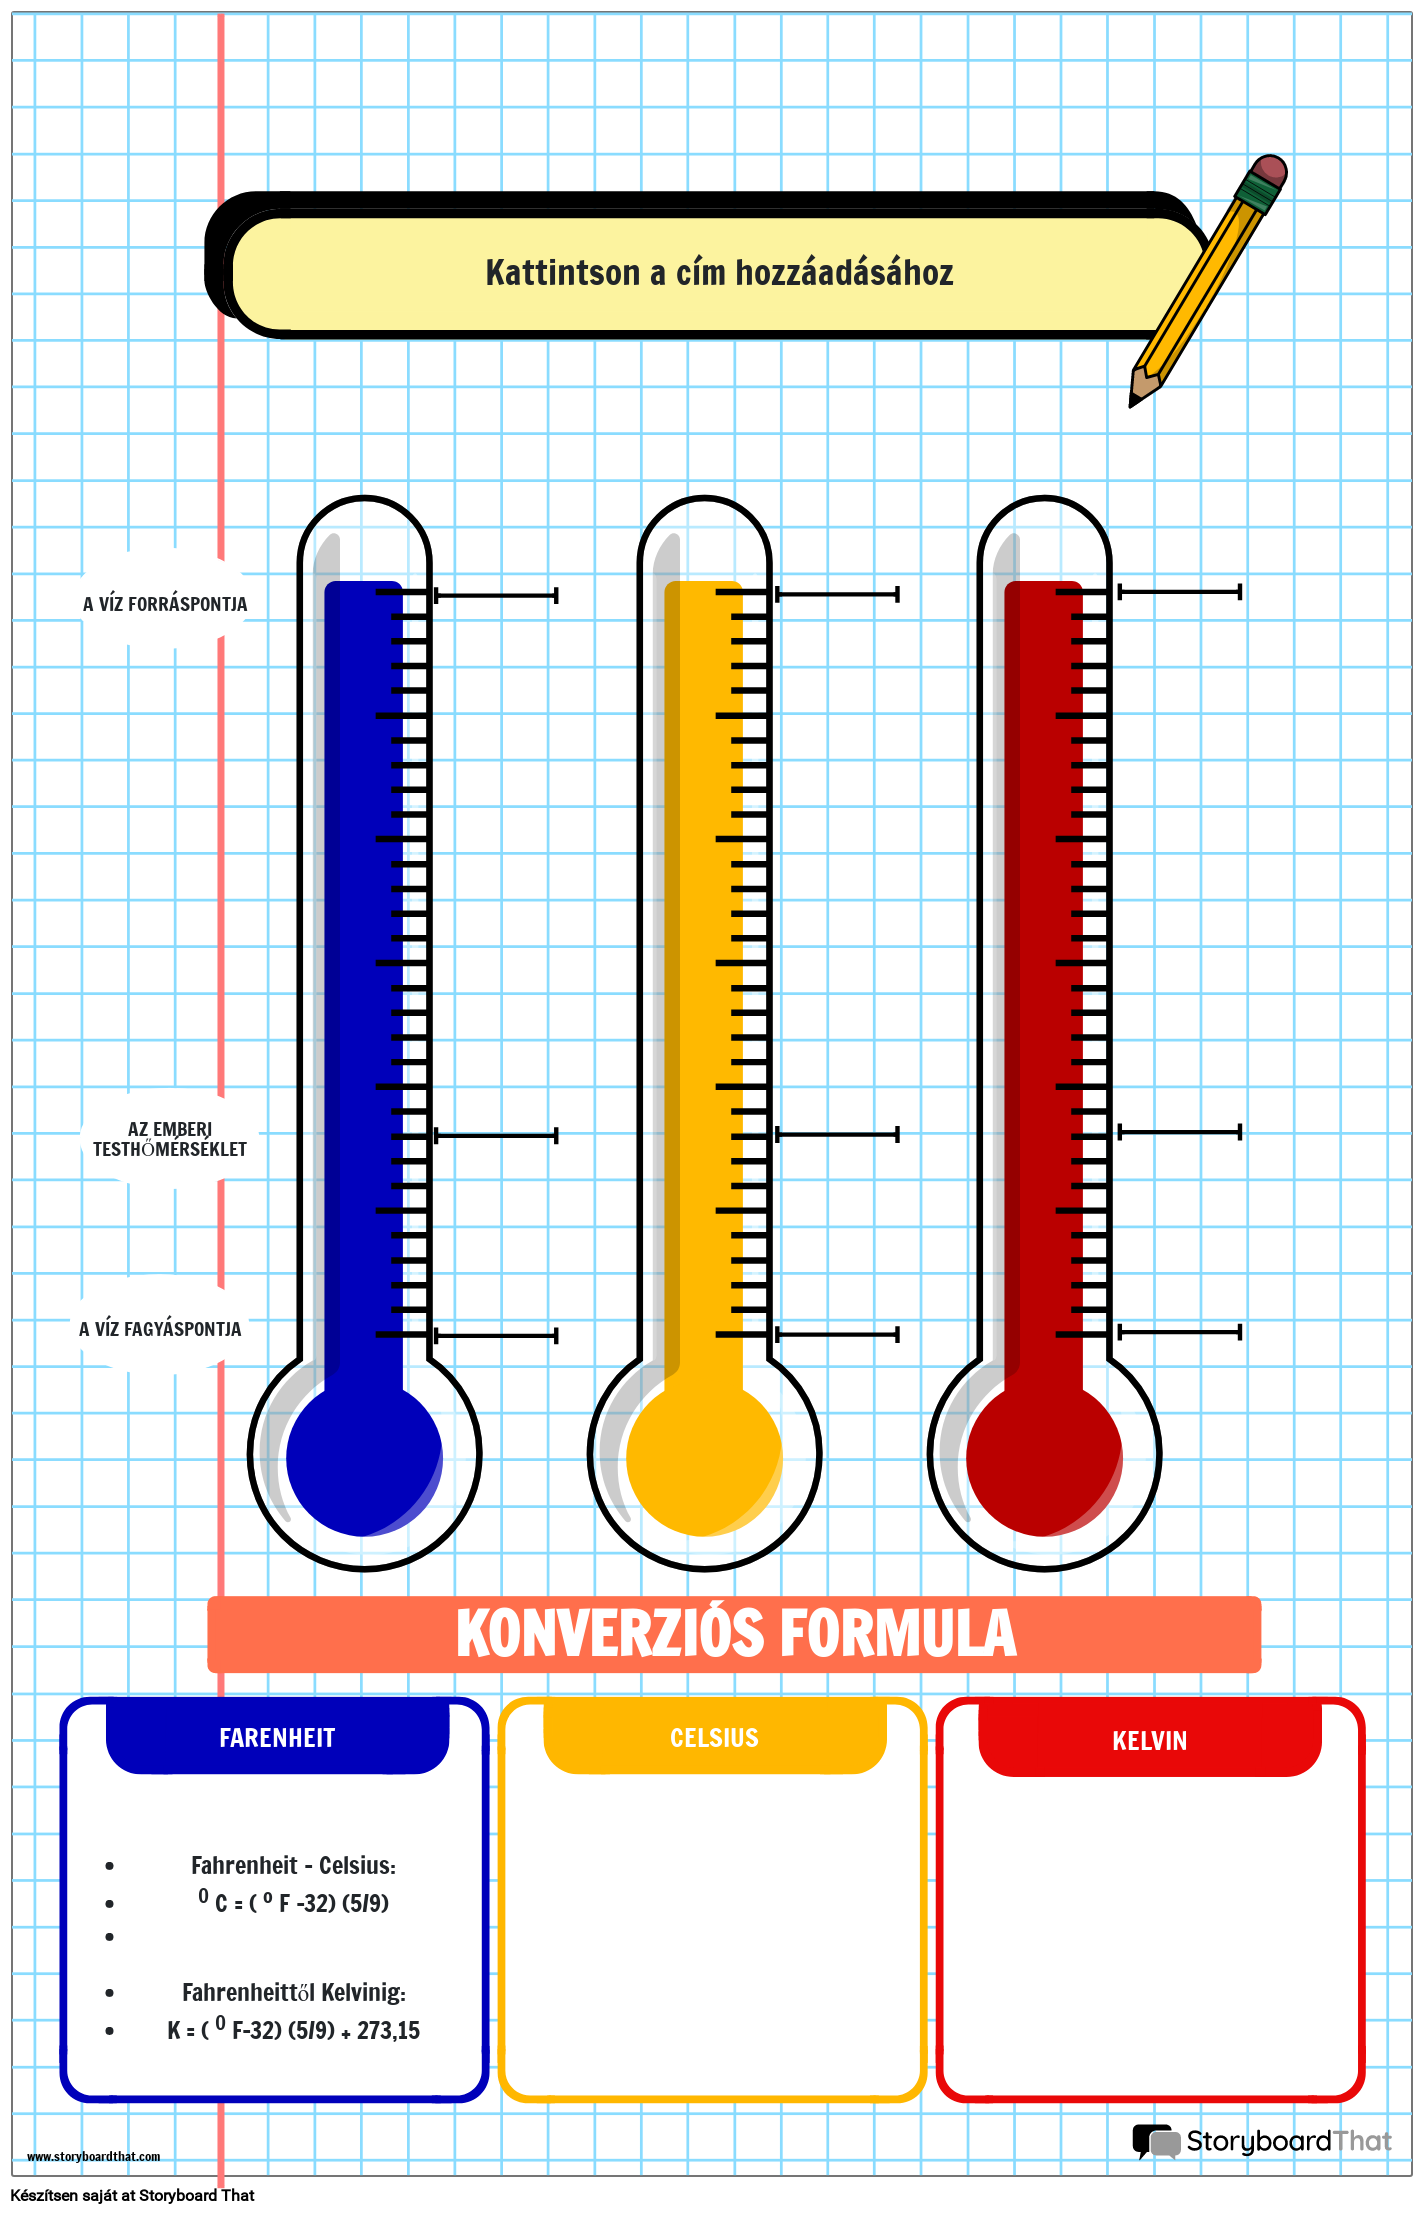 Notebook Témájú Hőmérsékleti Diagram Poszter